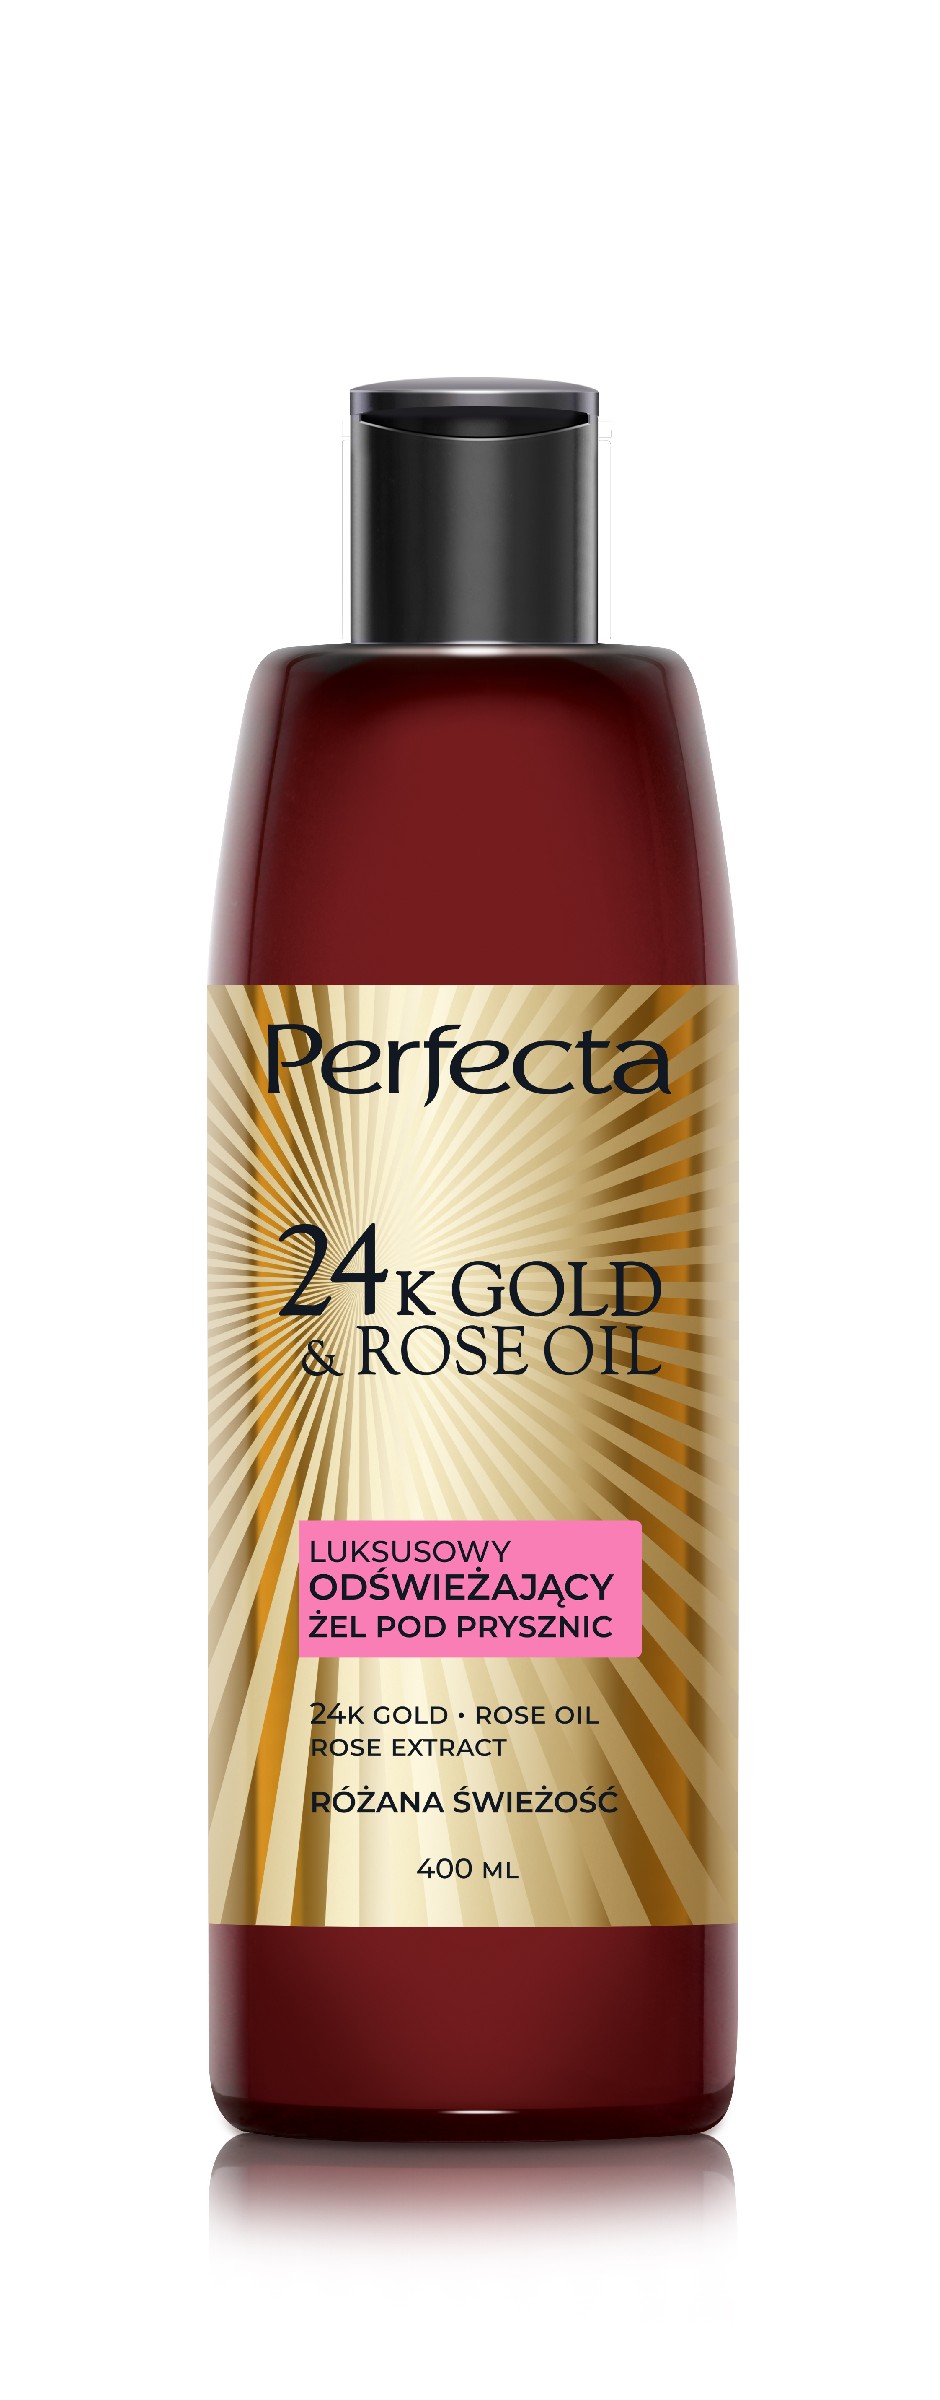 PERFECTA 24K Gold&Rose Oil Luksusowy odświeżający żel pod prysznic 400 ml